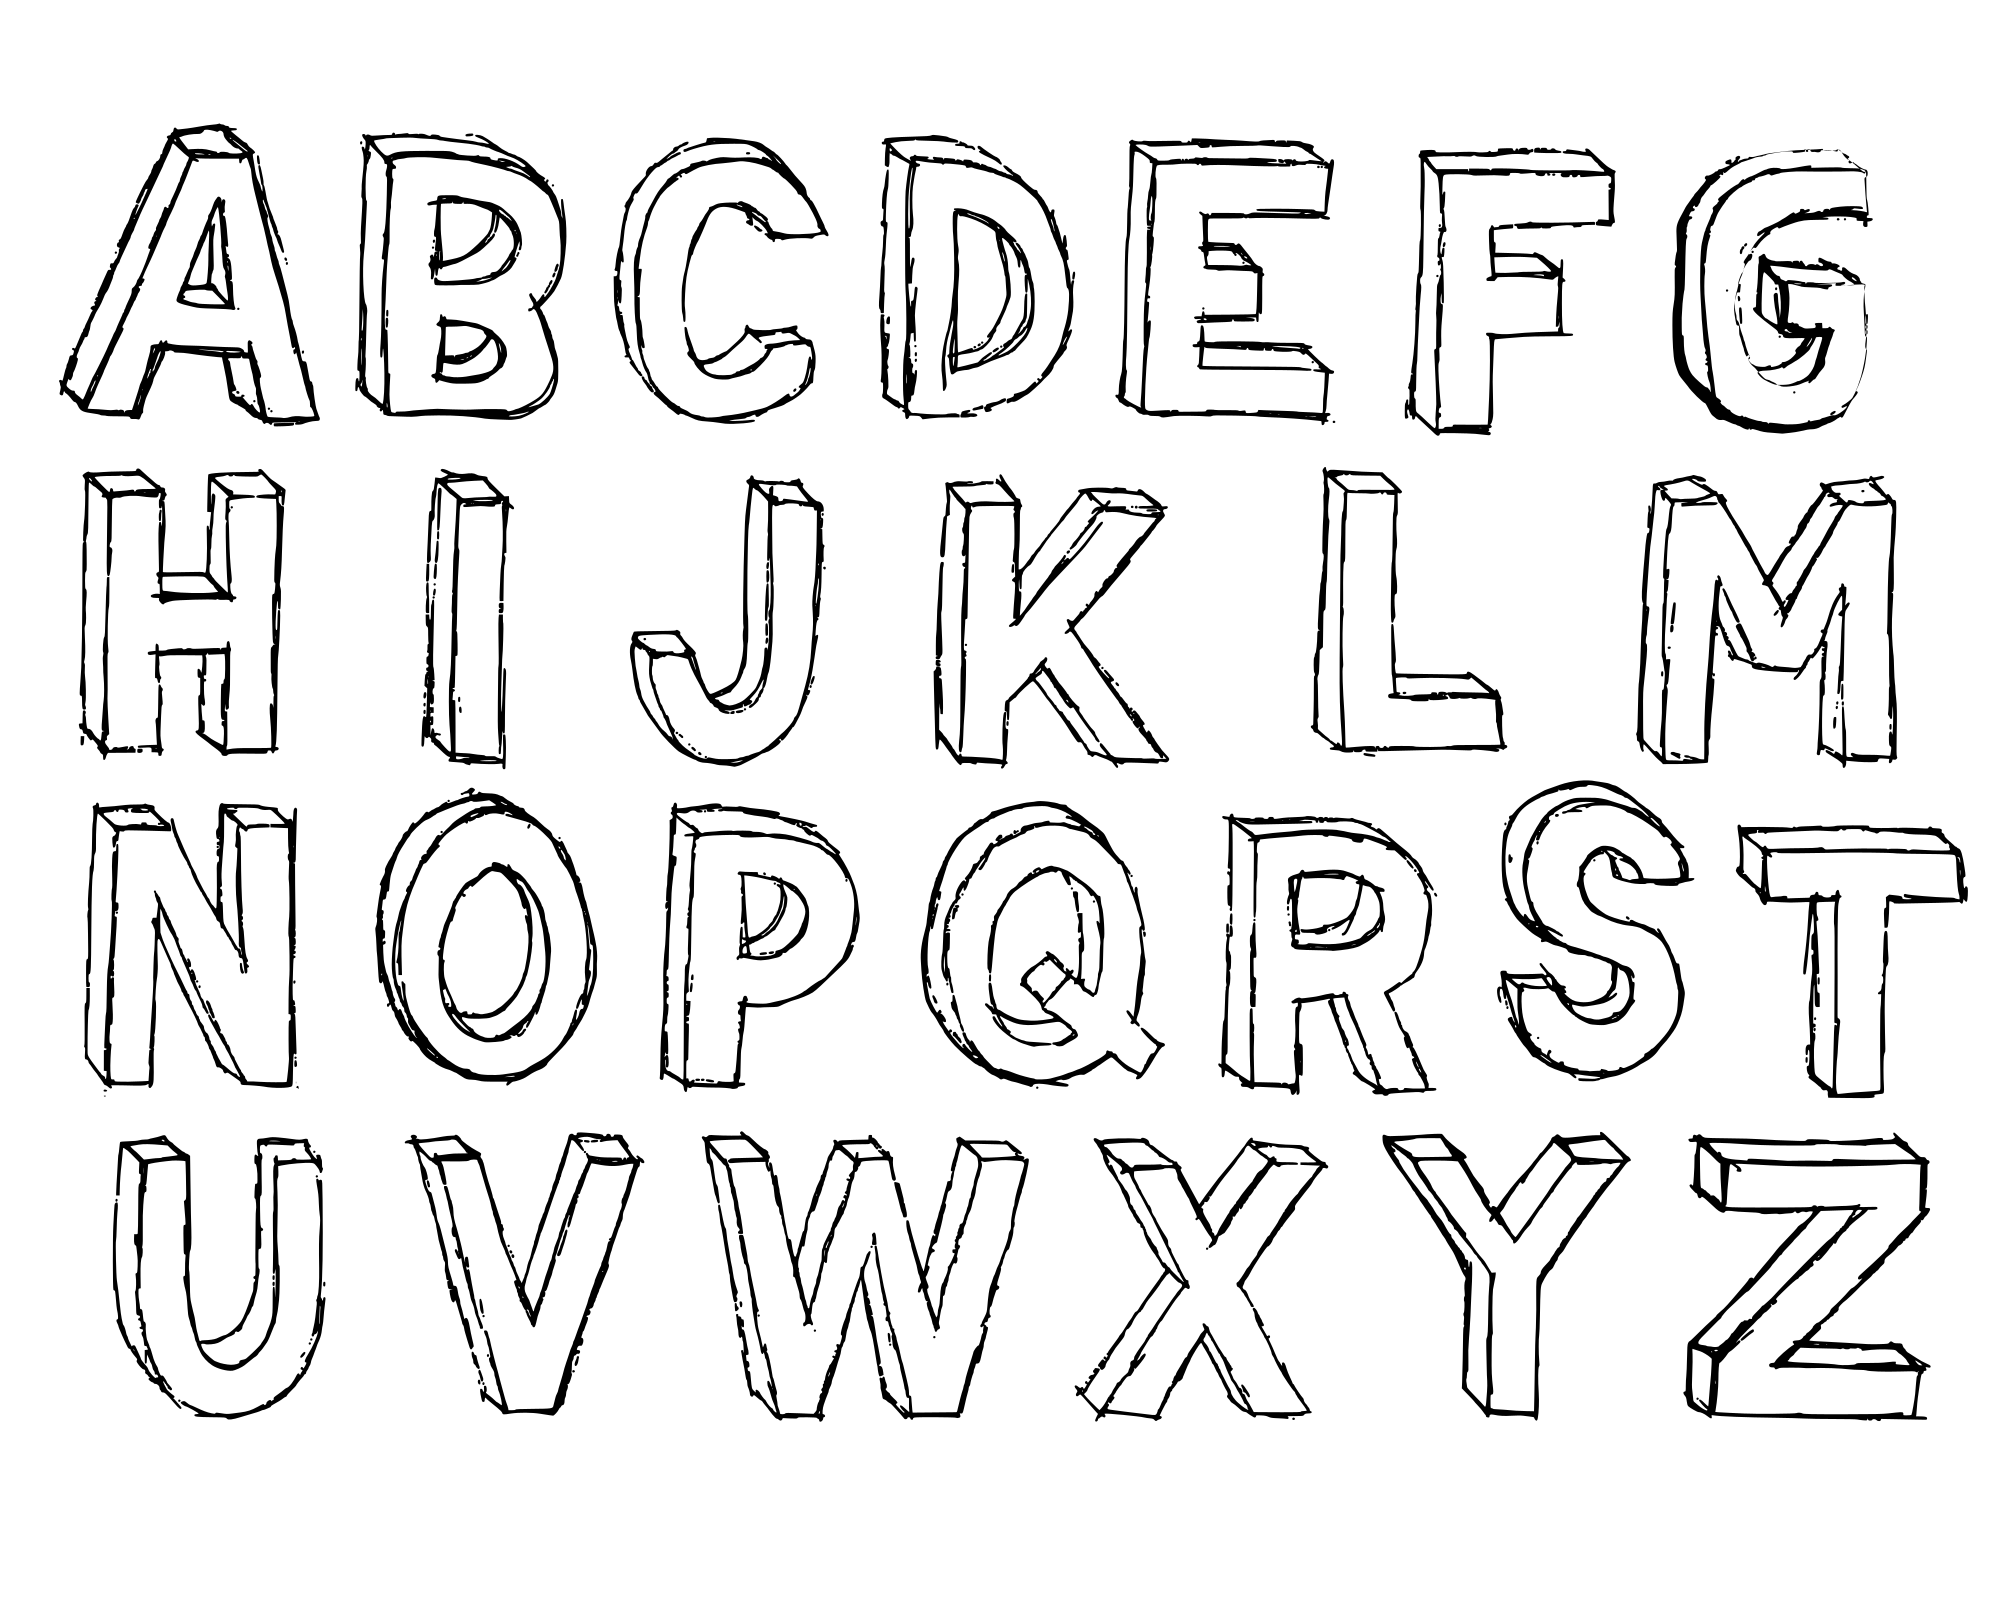 Шрифт распечатать крупным шрифтом. Объемный шрифт. Шрифты для рисования. Красивый объемный шрифт. Английский алфавит с объемными буквами.